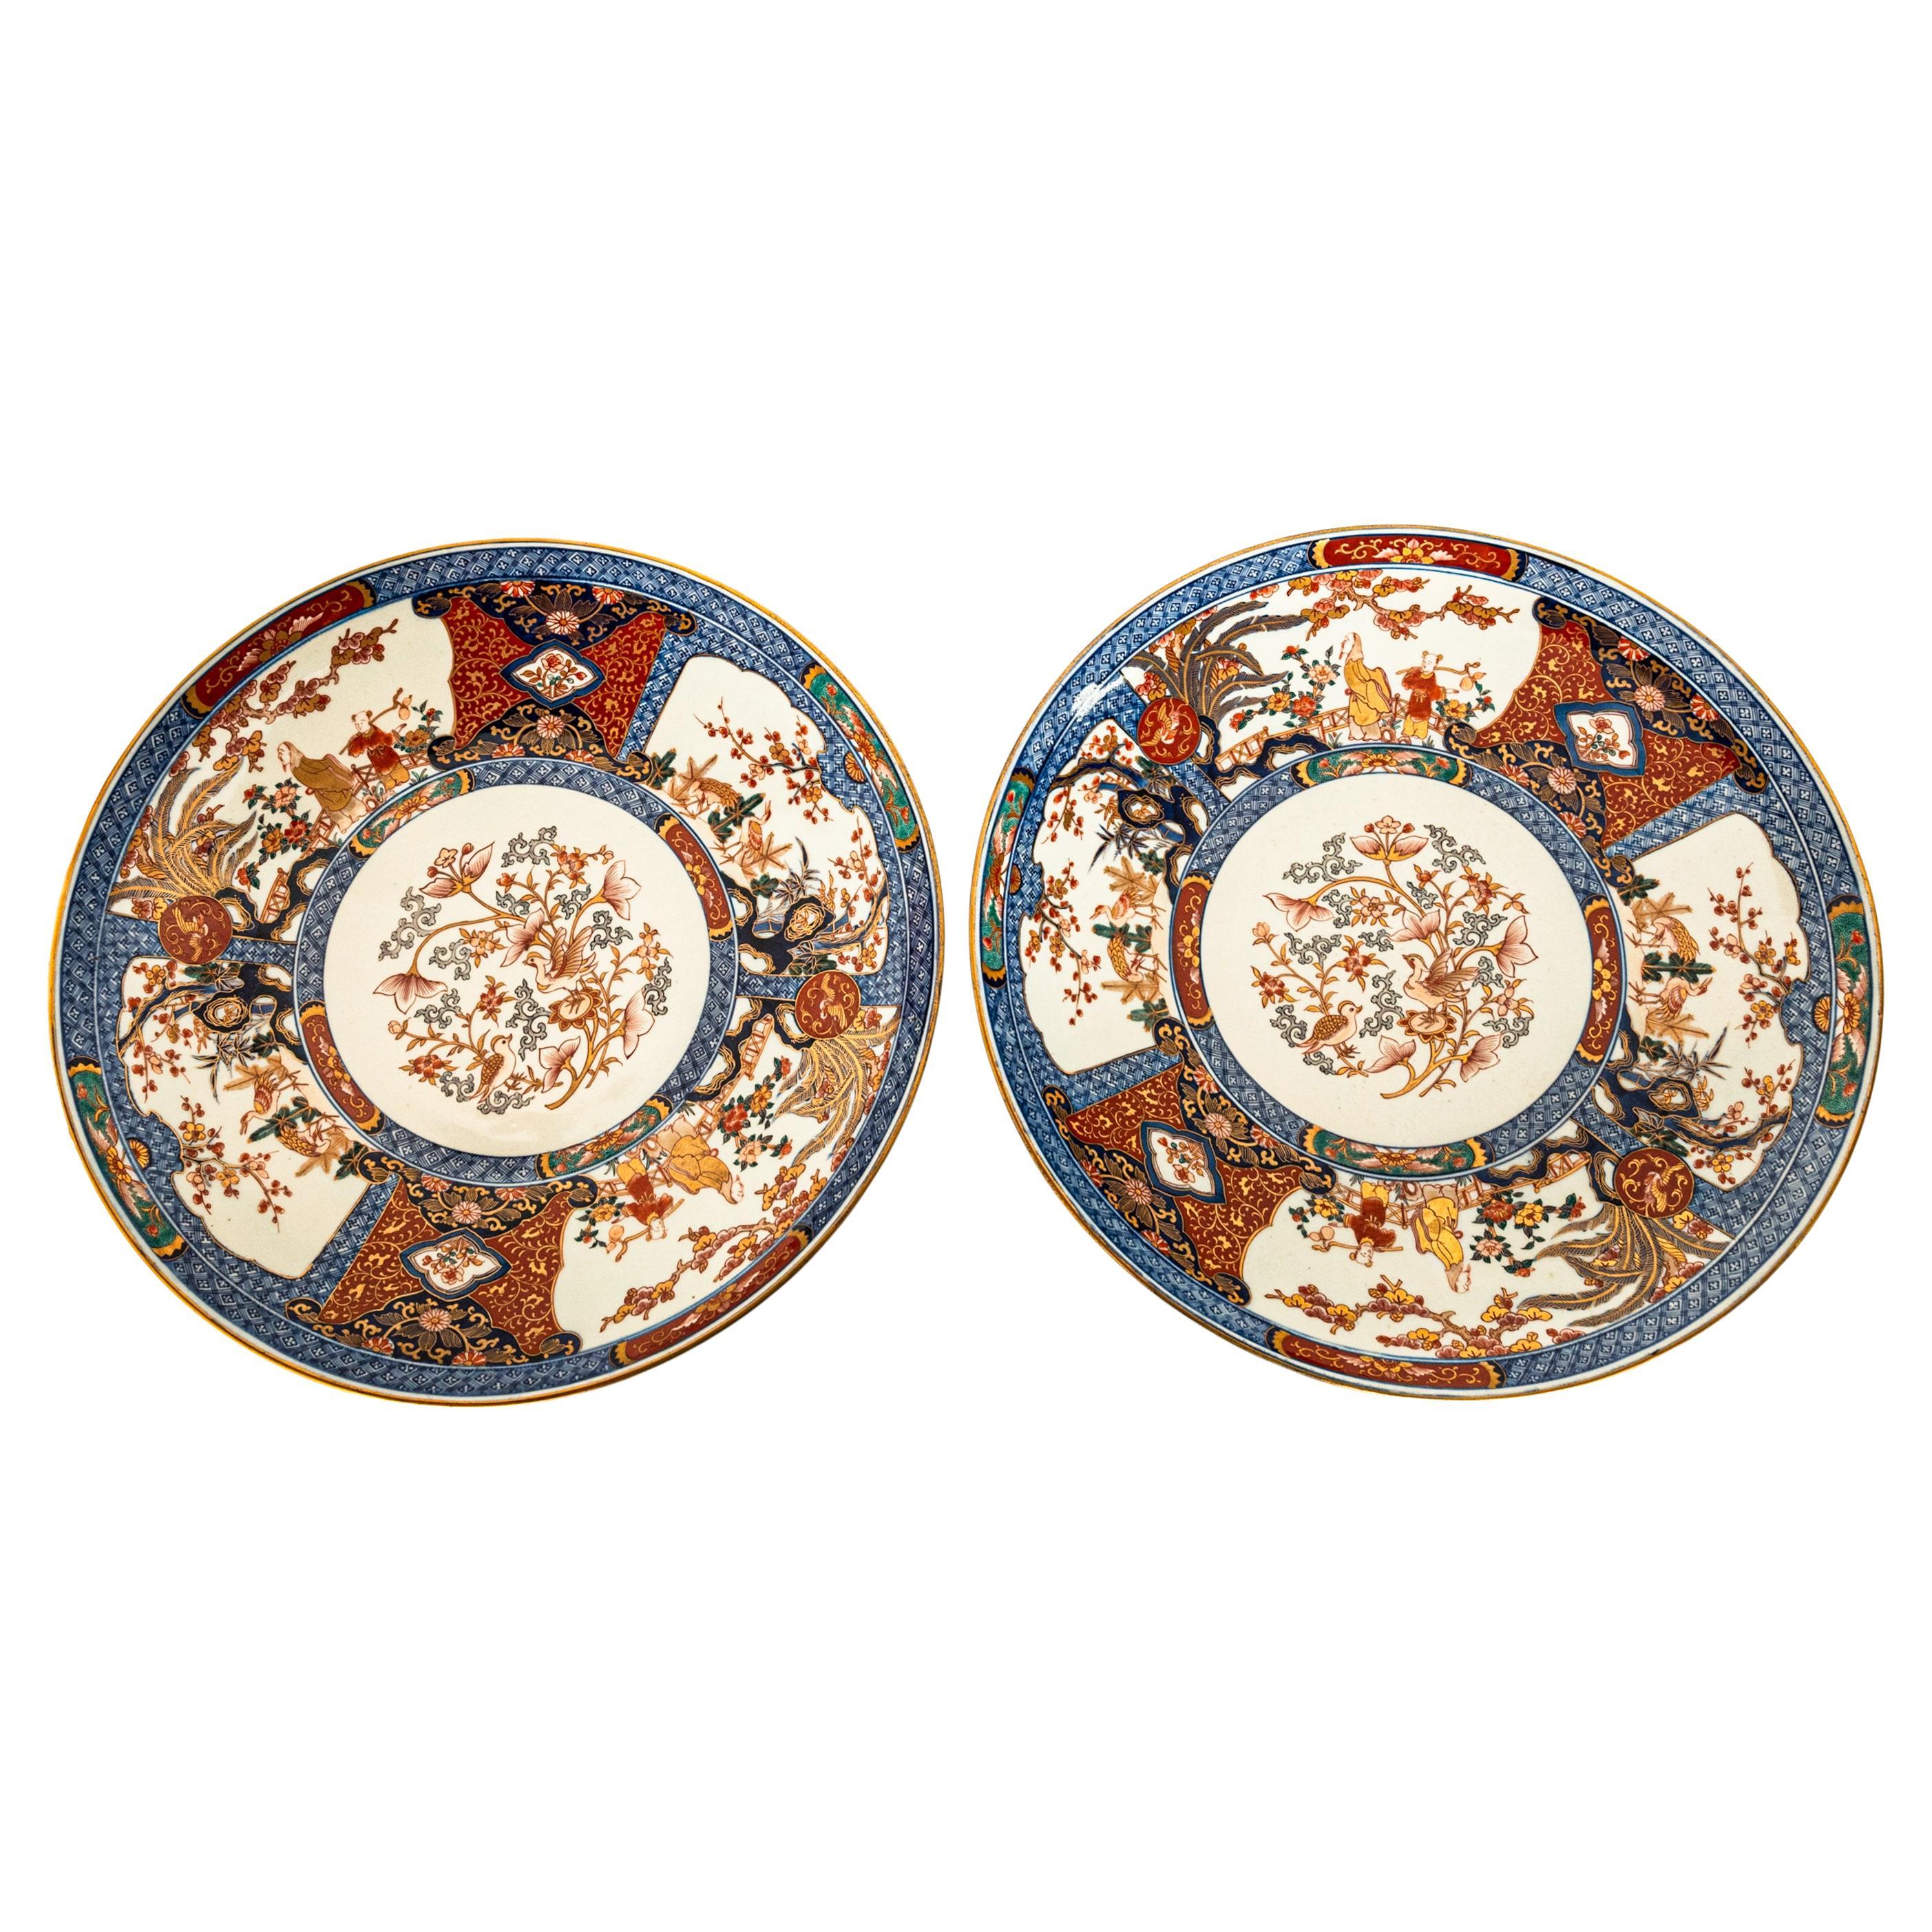 Exceptionnelle et monumentale paire d'assiettes en porcelaine japonaise de la période Meiji, vers 1880.
Chaque chargeur est finement et somptueusement décoré à la main de panneaux d'oxyde de fer bleu et rouge sous glaçure, rehaussés de décorations